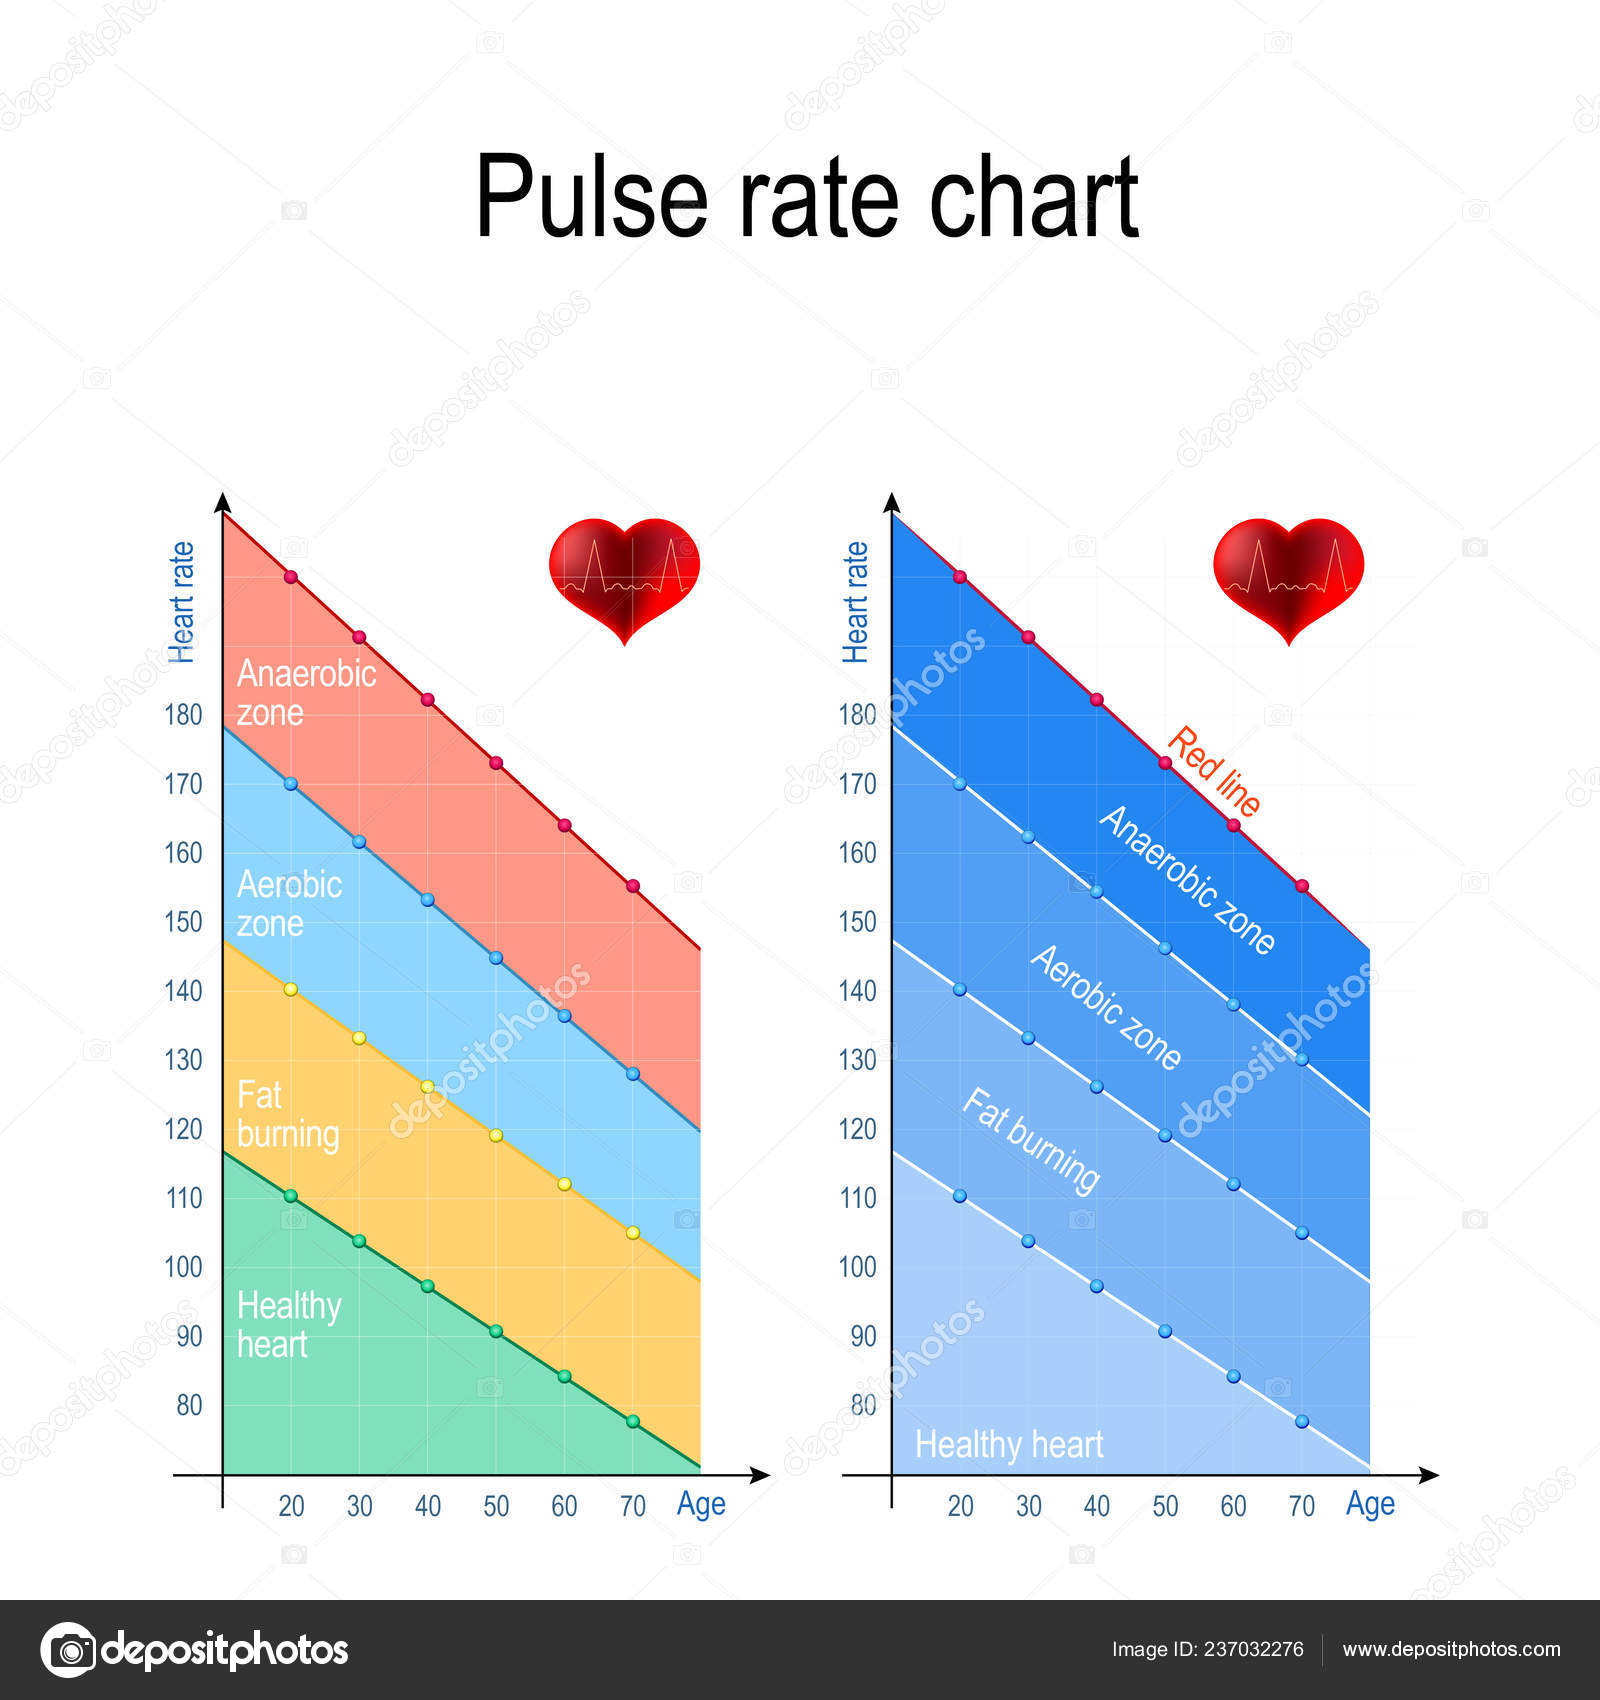 Maximum Heart Rate Chart